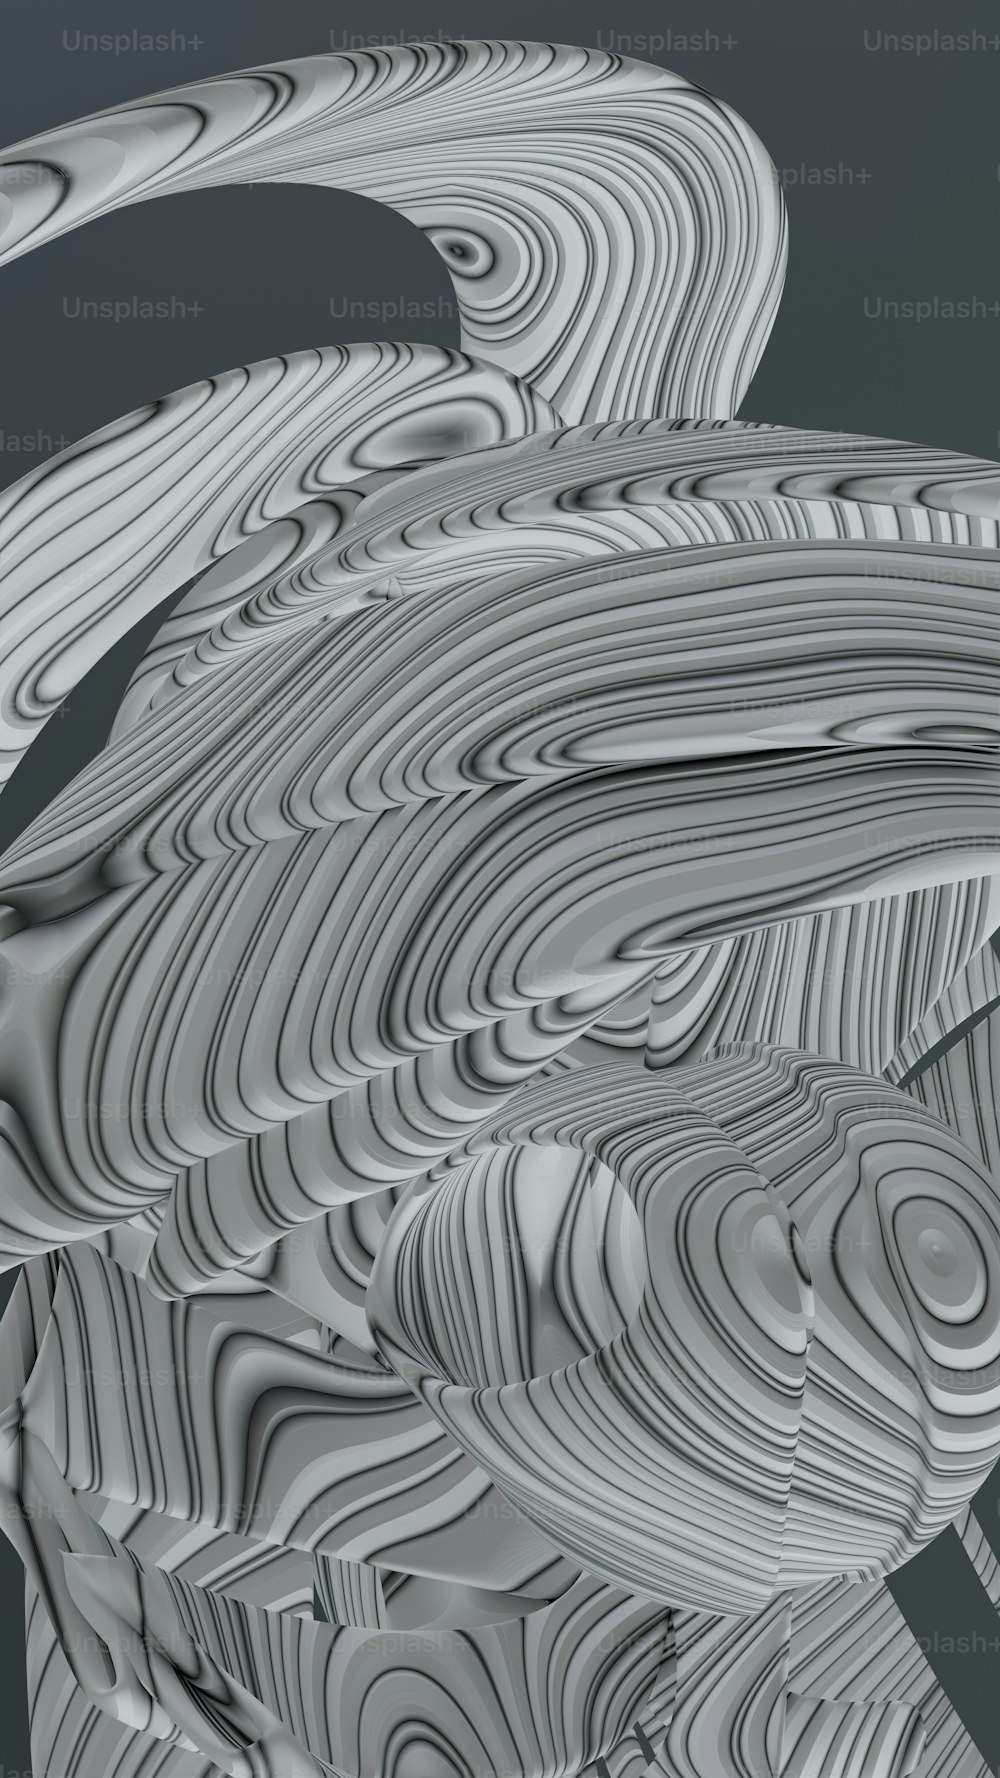 Una imagen abstracta de líneas onduladas y curvas